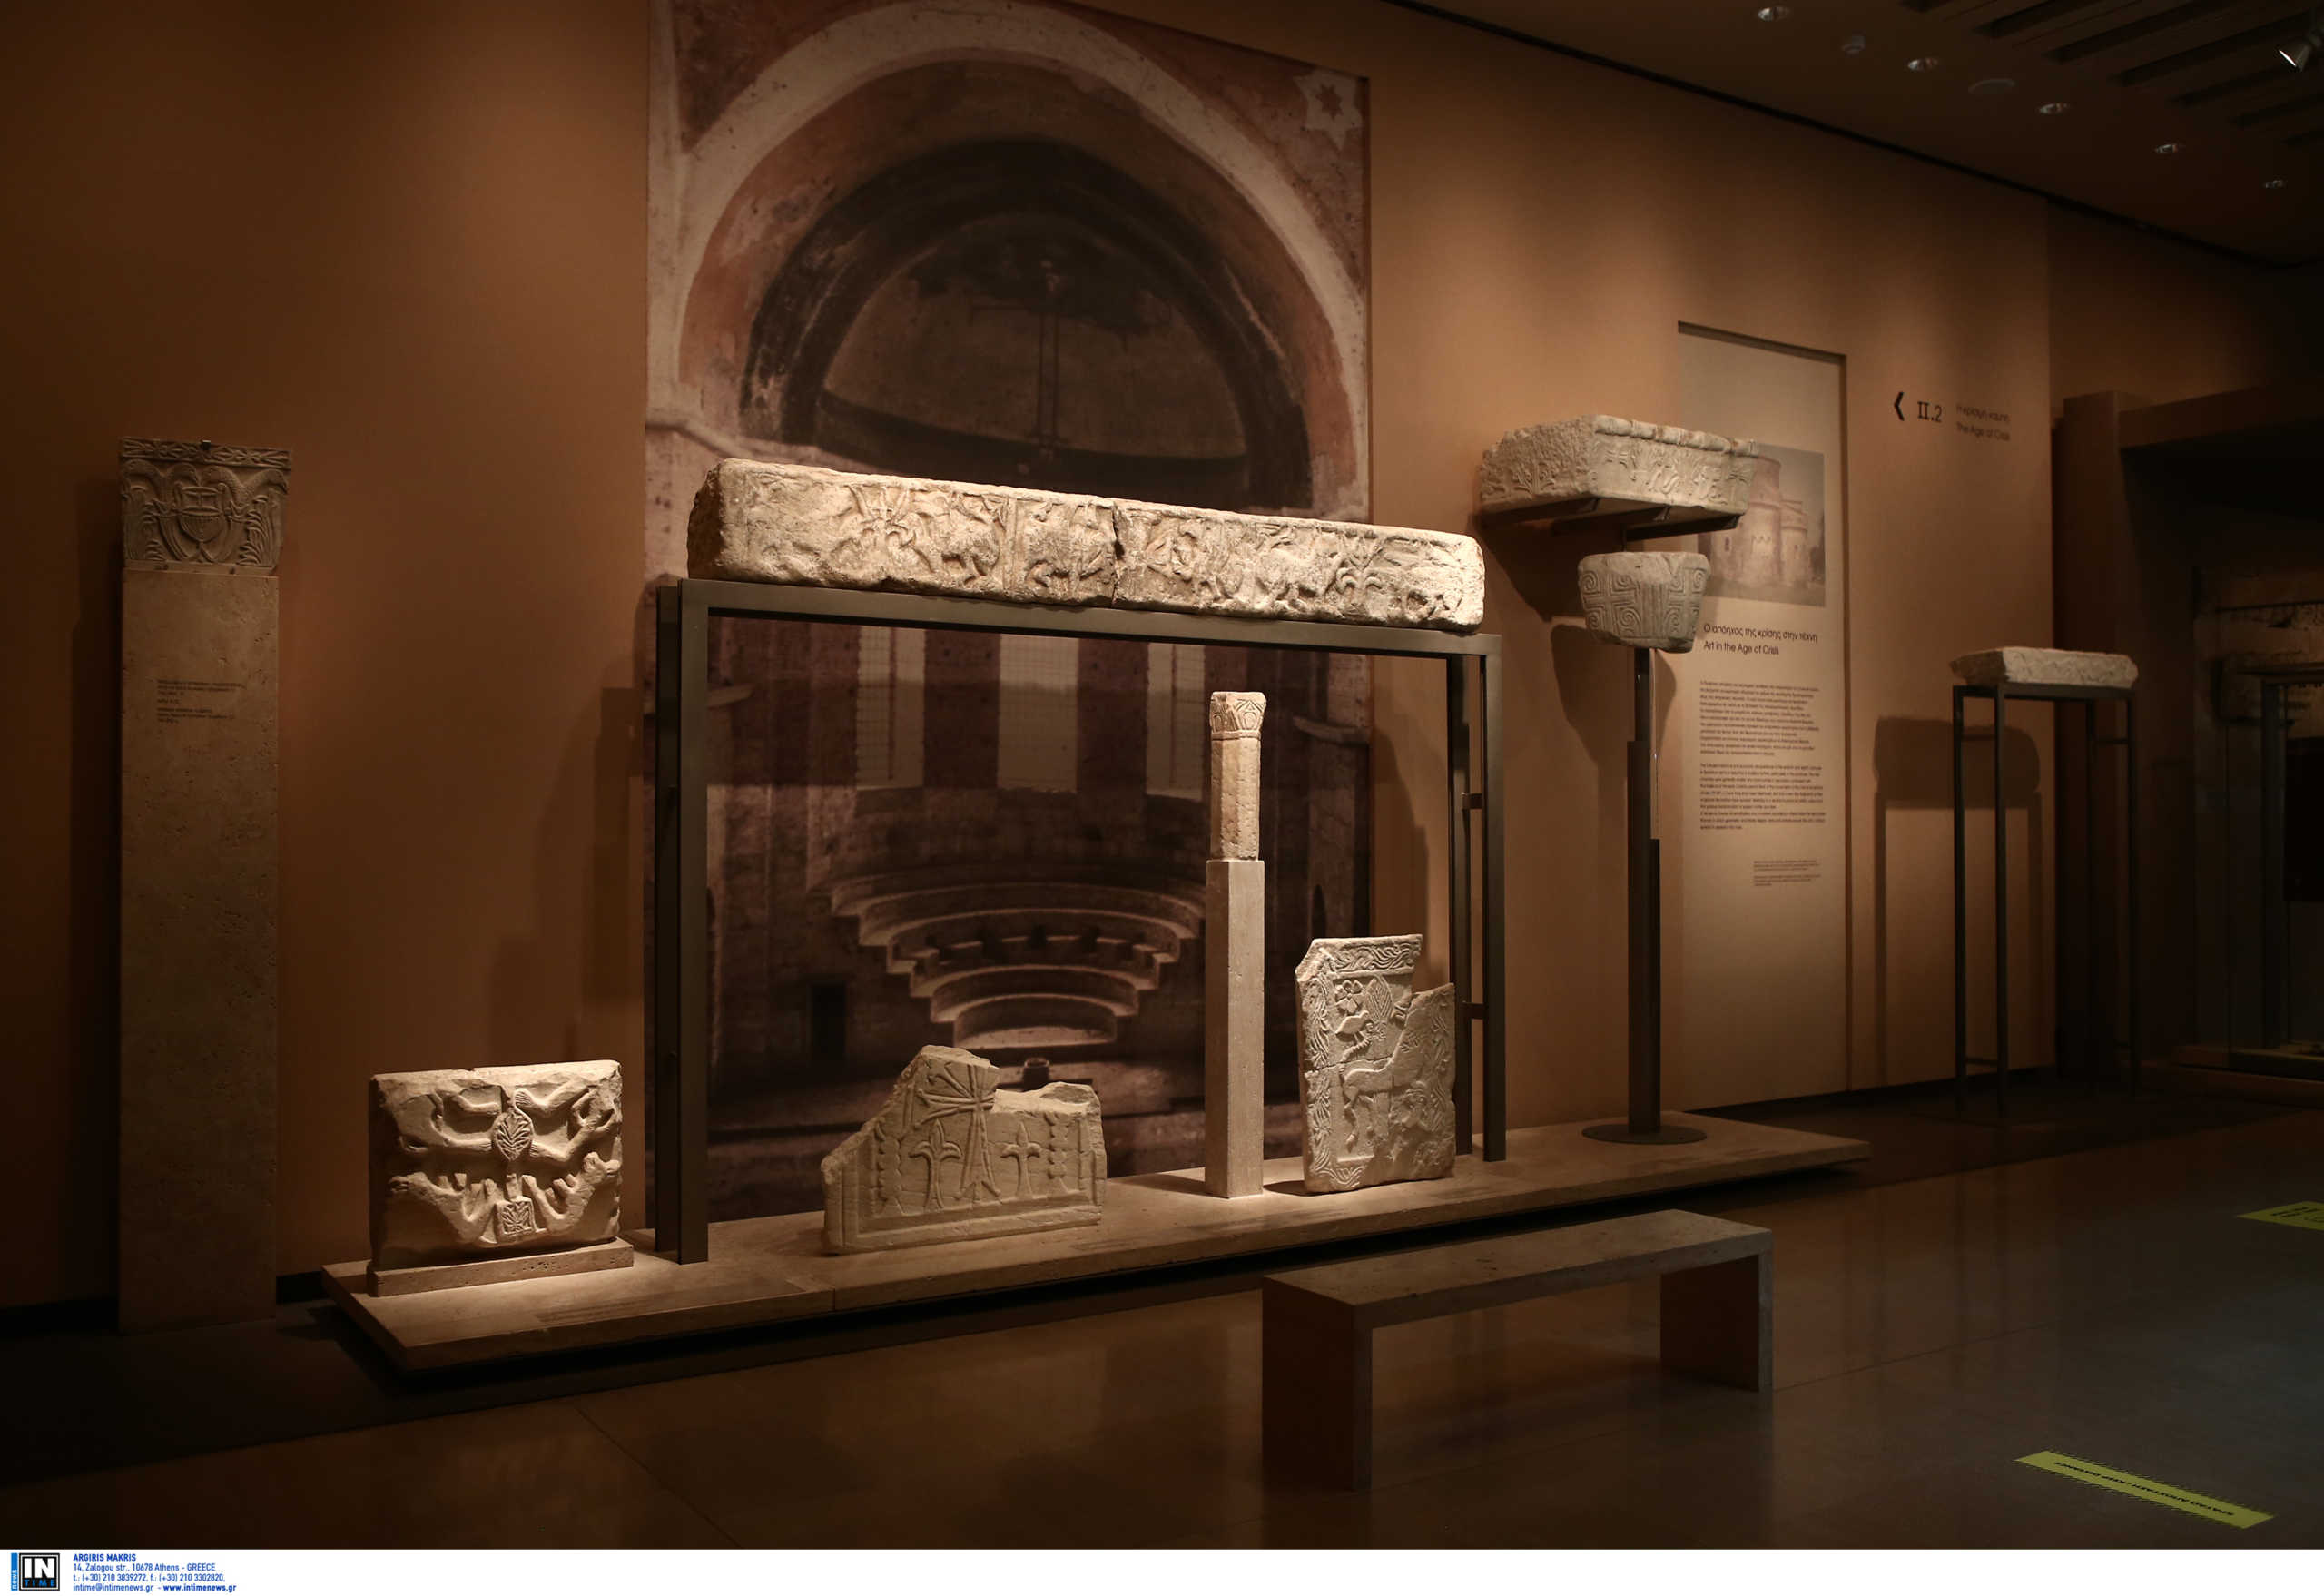 Προσωρινά κλειστό το Βυζαντινό και Χριστιανικό Μουσείο Αθηνών – Πότε επαναλειτουργεί